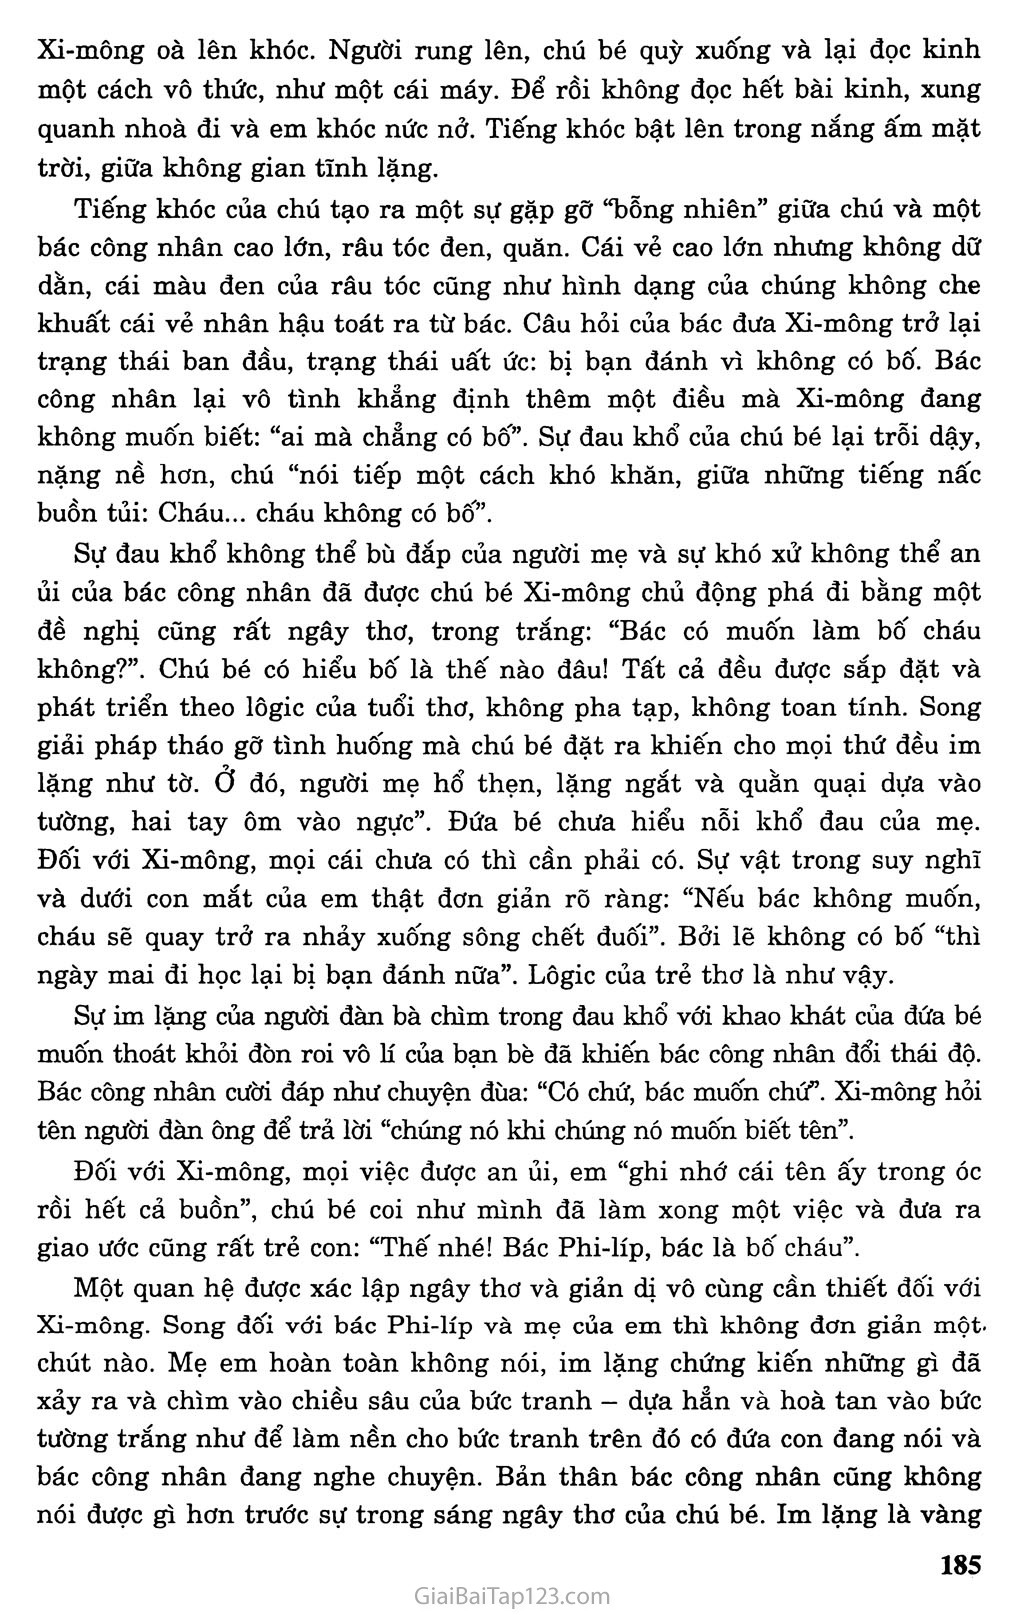 Bố của Xi - mông (trích) trang 5